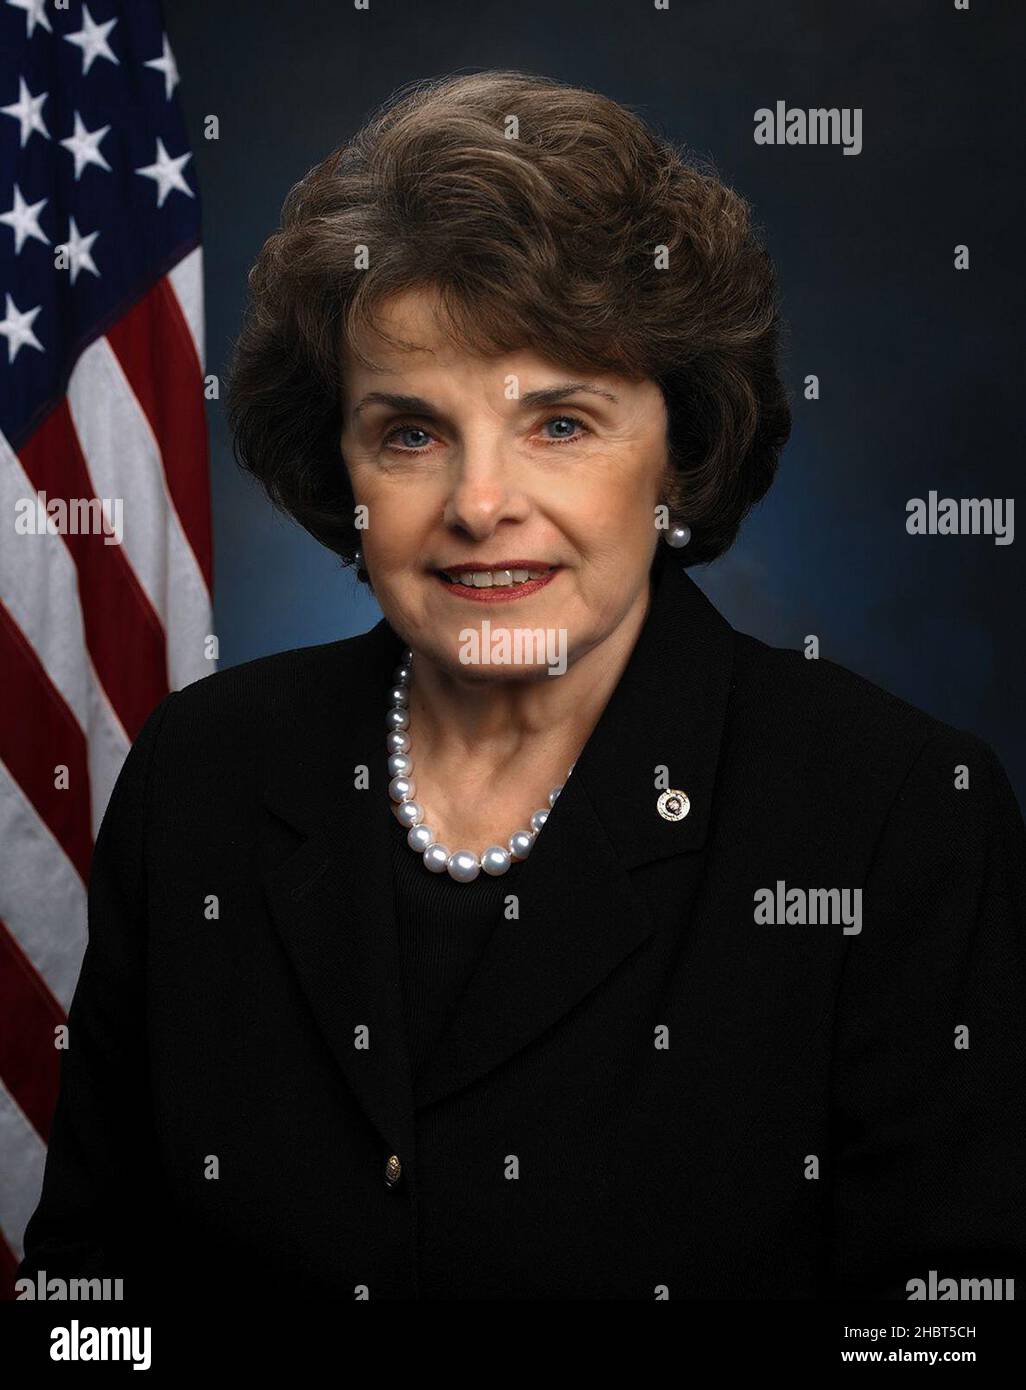 Dianne Feinstein, membre du Sénat des États-Unis Banque D'Images